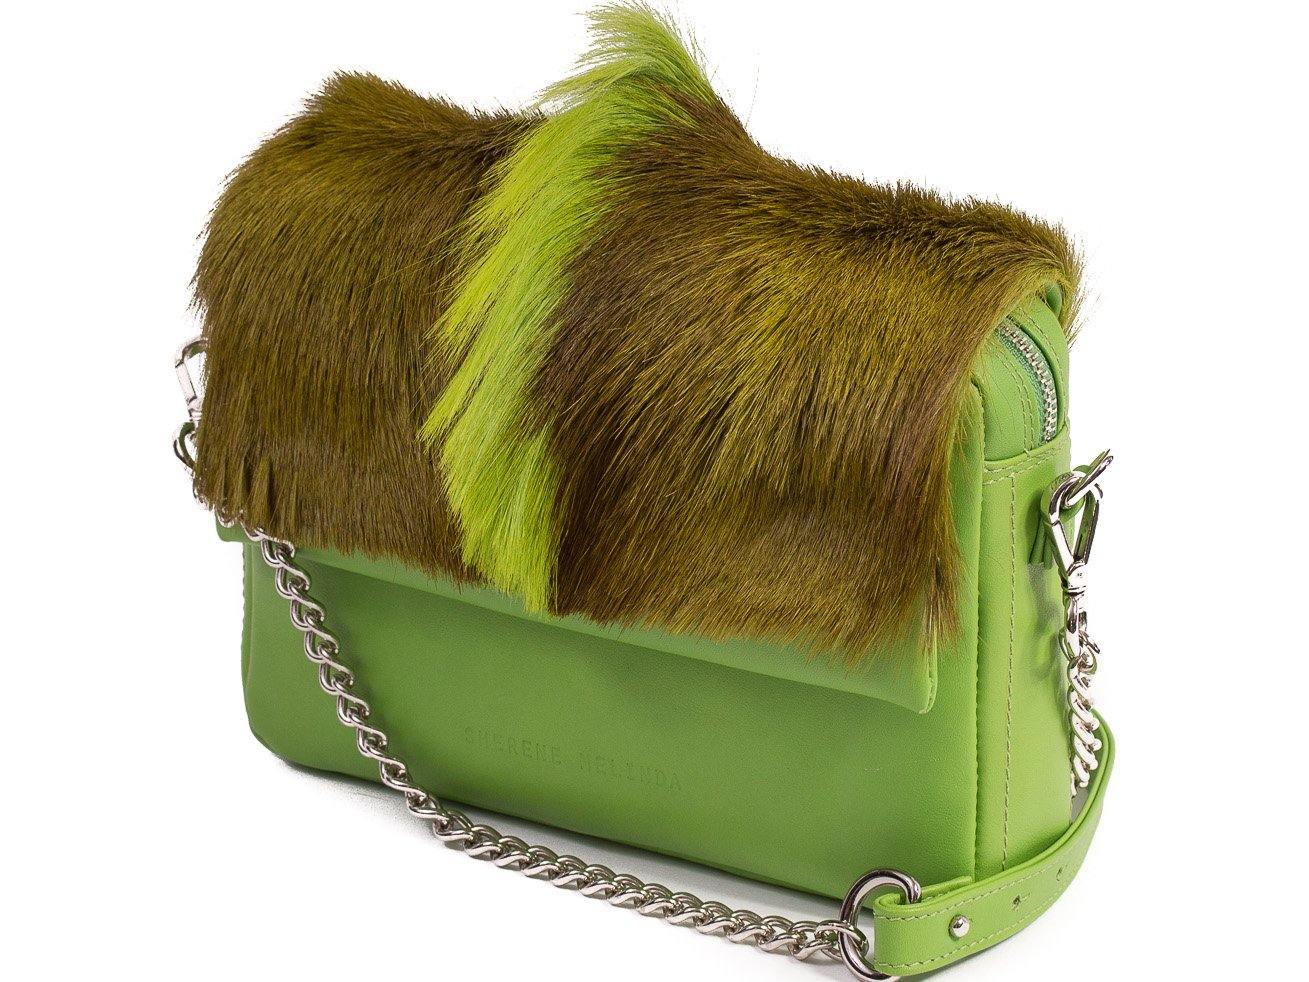 sherene melinda springbok hair-on-hide lime green leather shoulder bag Fan side angle strap